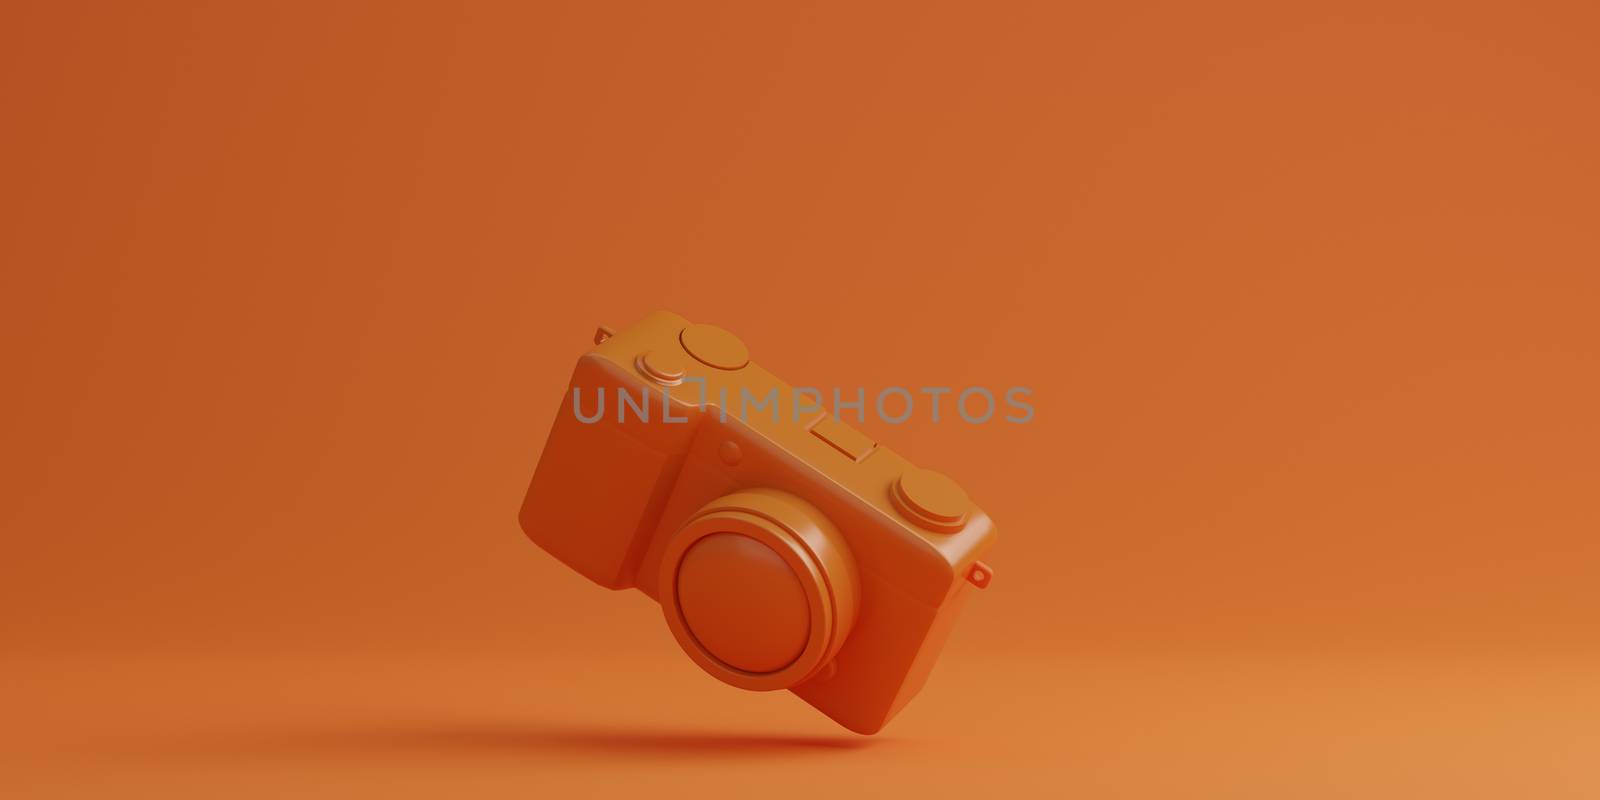 Orange digital camera on orange background, technology concept. 3d rendering